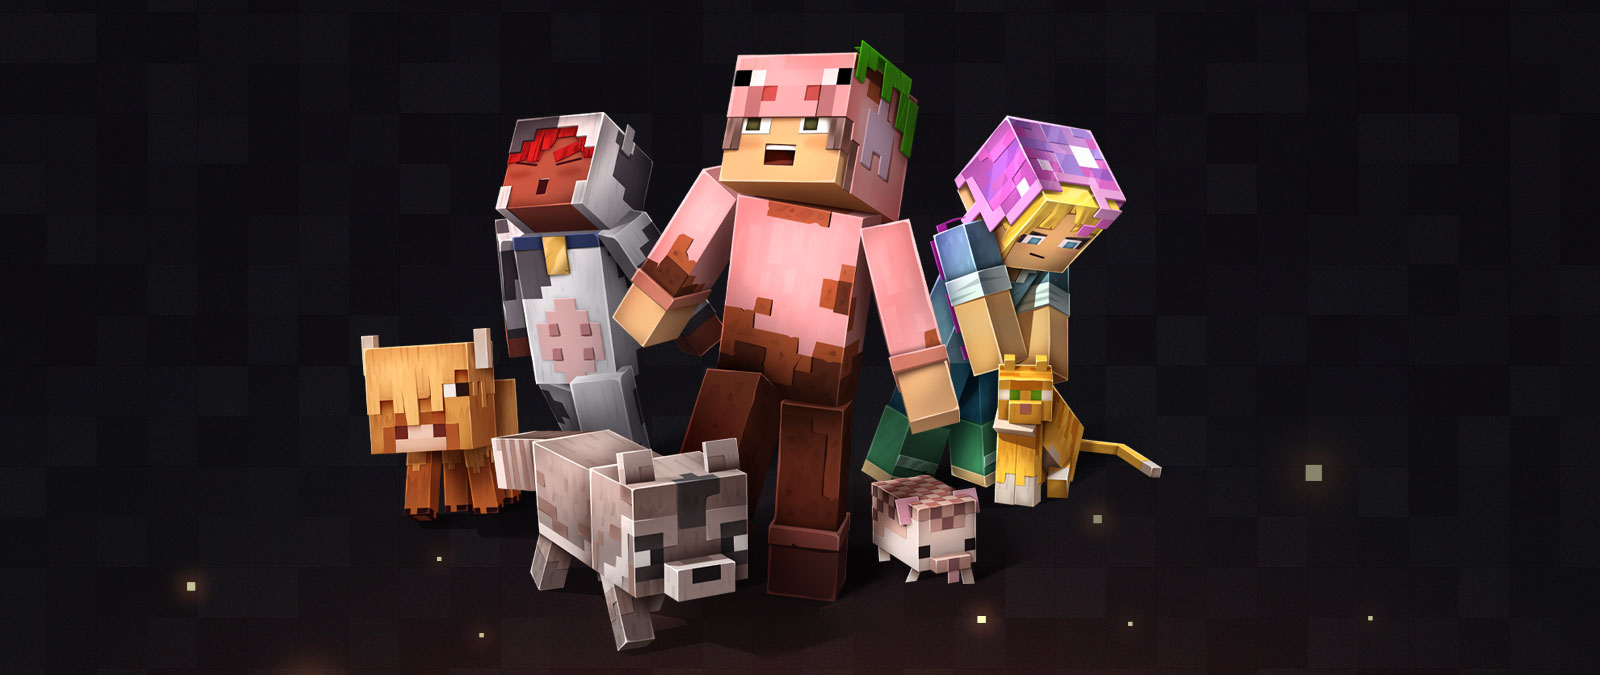 Персонажи Minecraft и животные в разных скинах, один из персонажей наклоняется, чтобы погладить кошку.